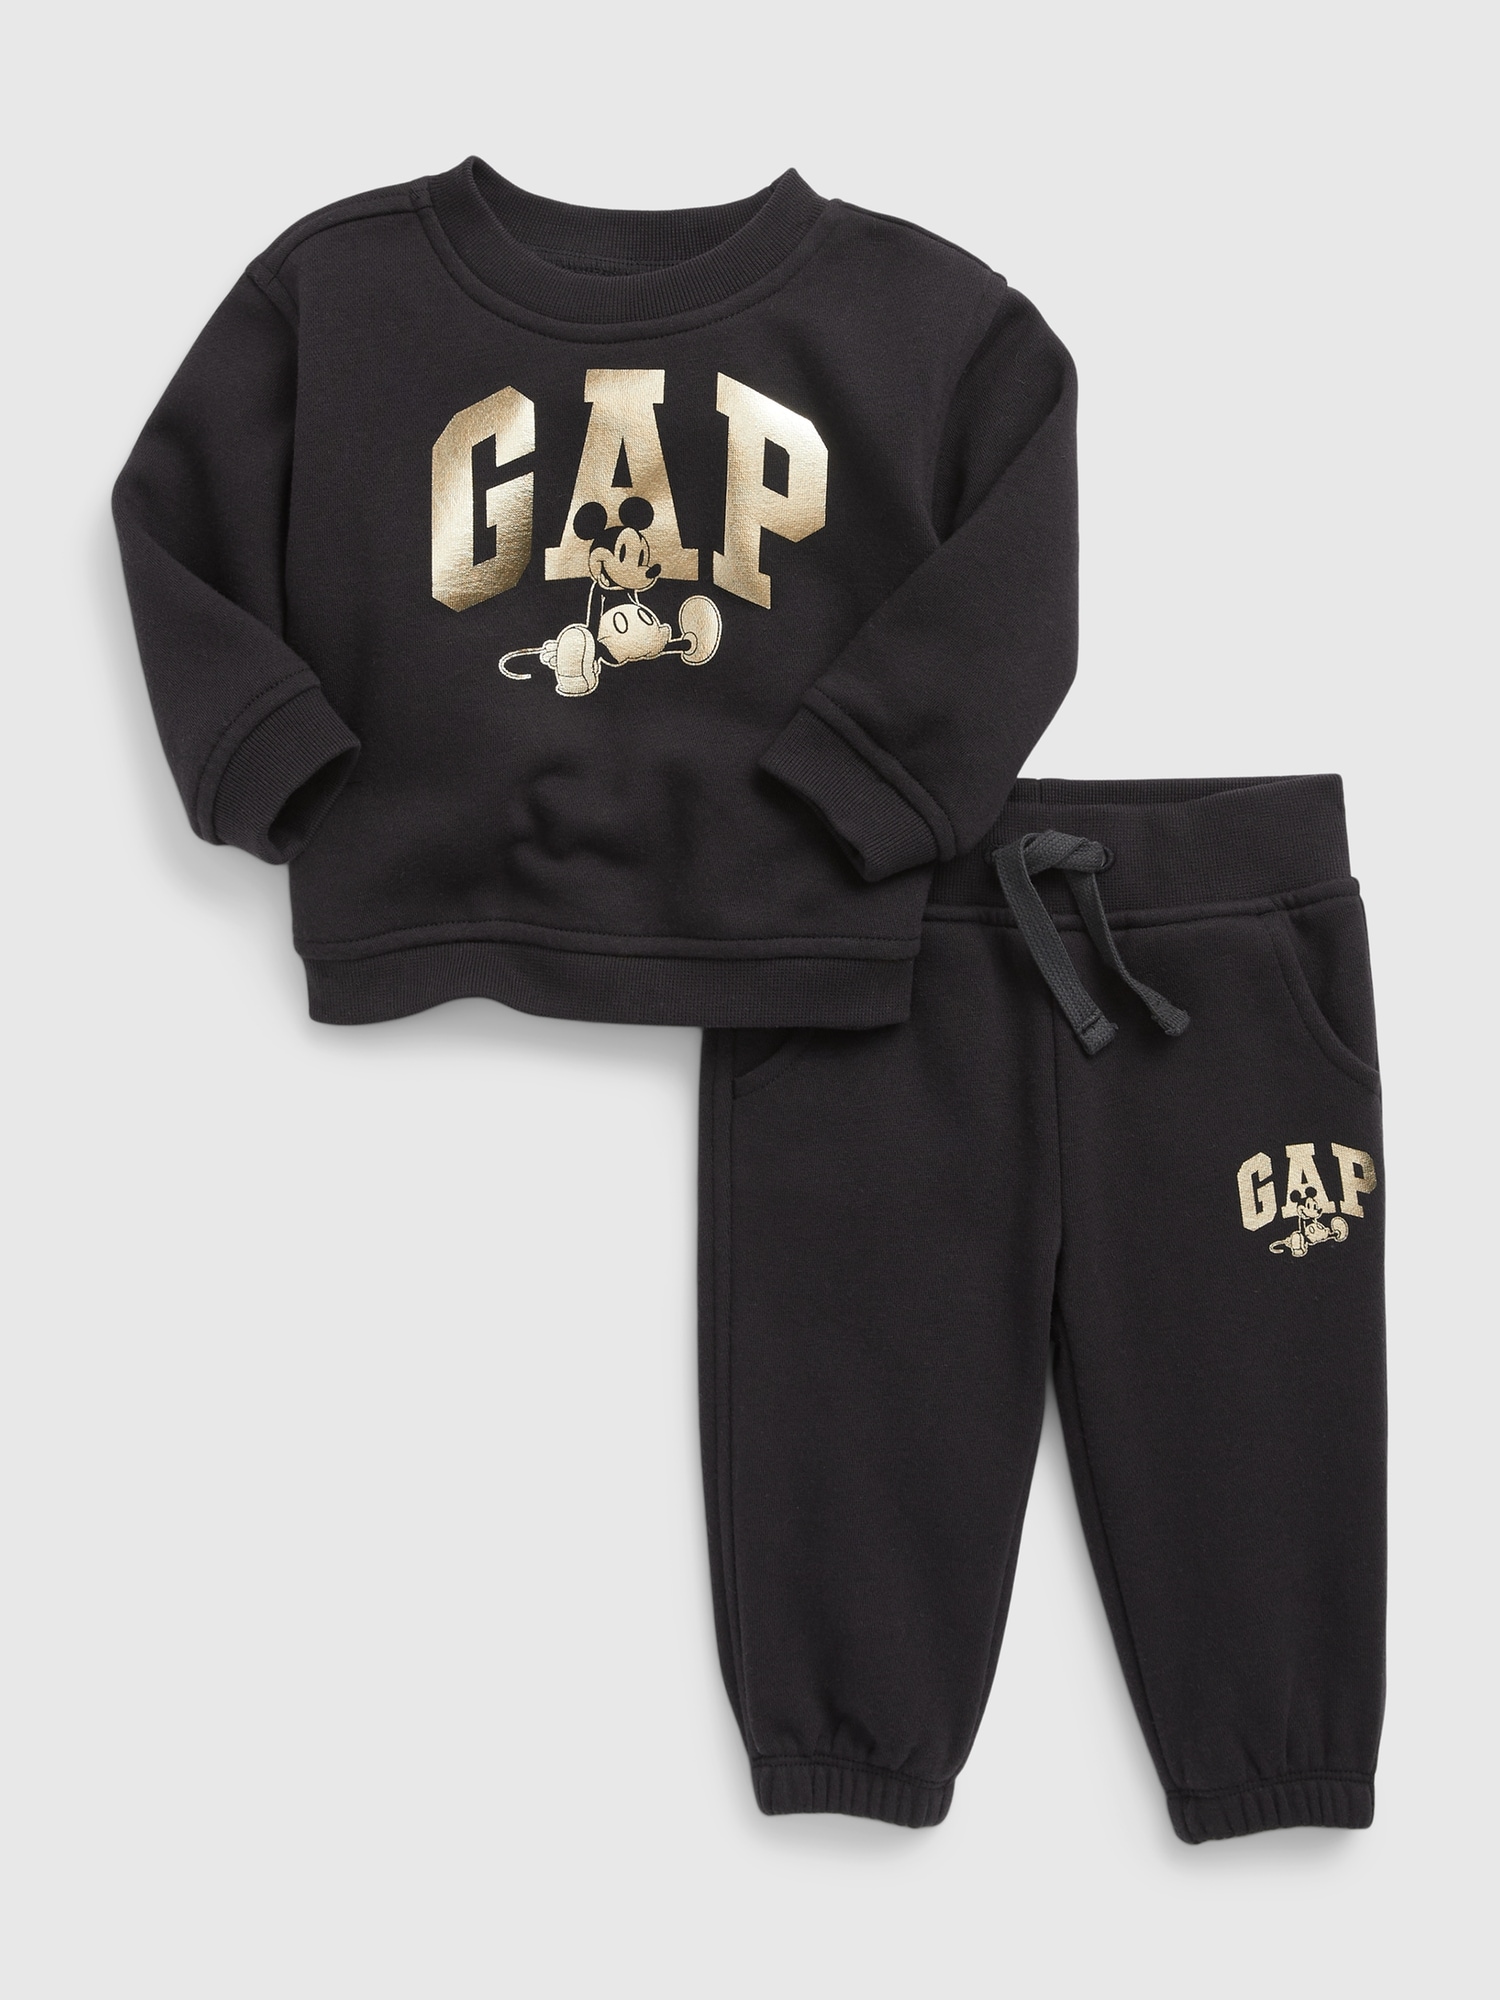 通販限定価格 baby GAP スウェット パンツ ズボン ネットショッピング:132050円 ブランド:ベビーギャップ スラックパンツ